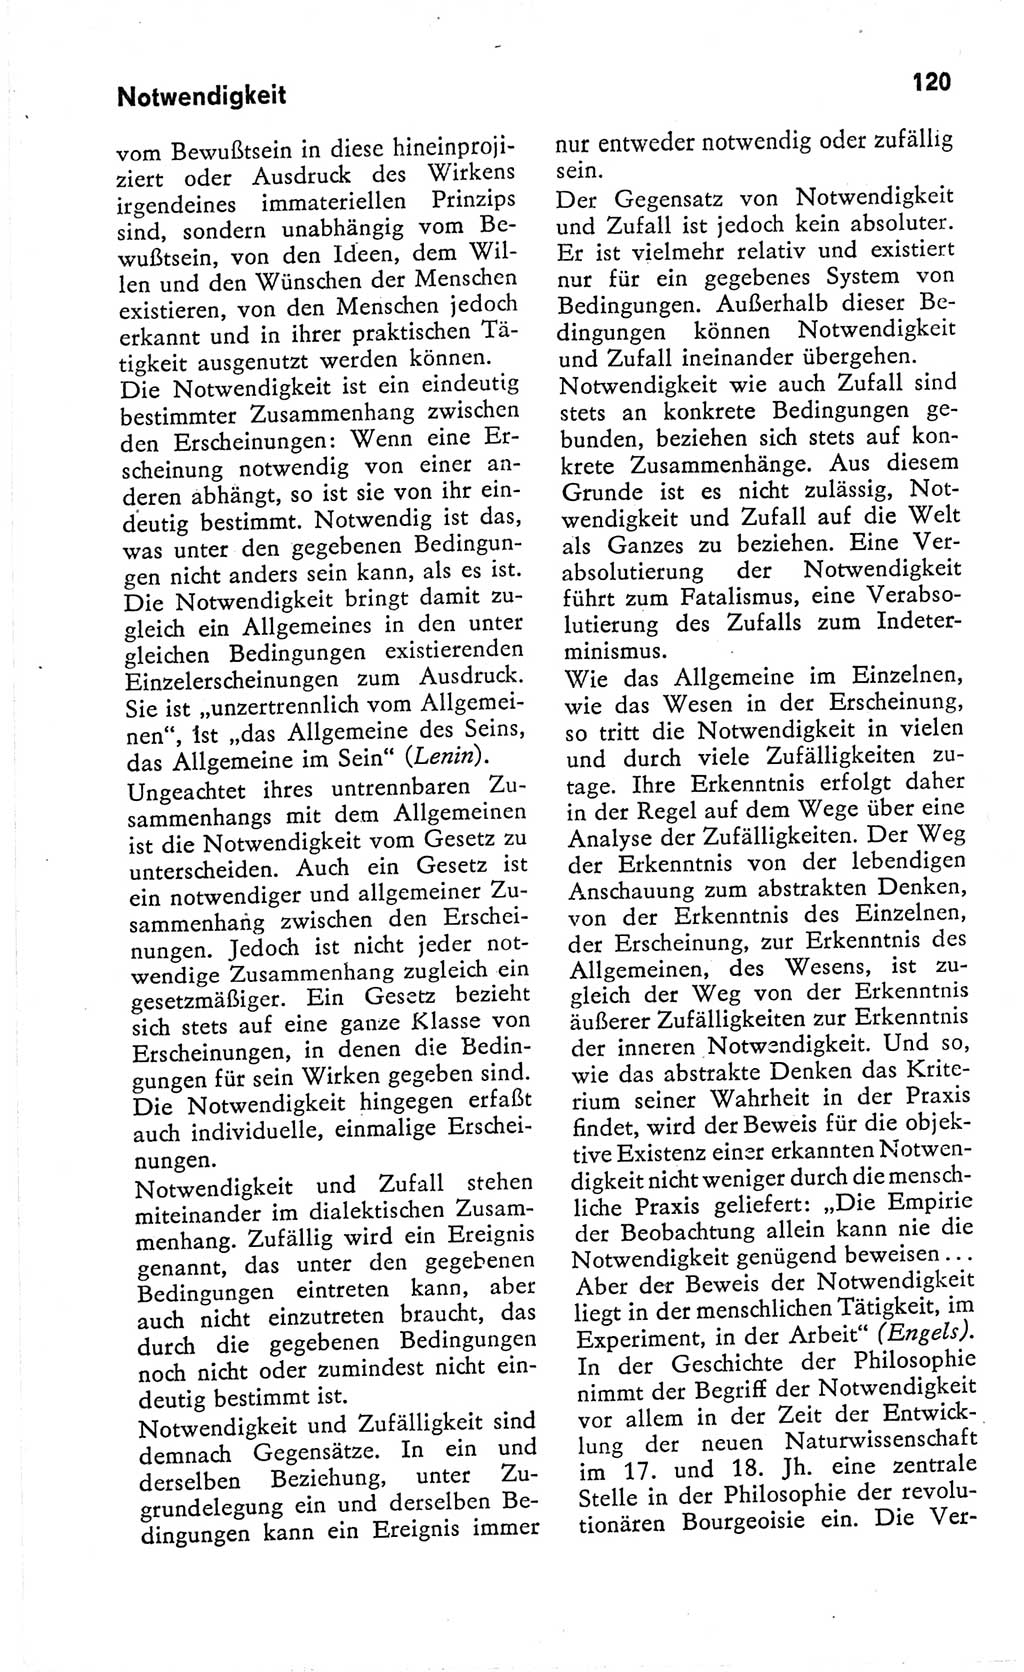 Kleines Wörterbuch der marxistisch-leninistischen Philosophie [Deutsche Demokratische Republik (DDR)] 1966, Seite 120 (Kl. Wb. ML Phil. DDR 1966, S. 120)